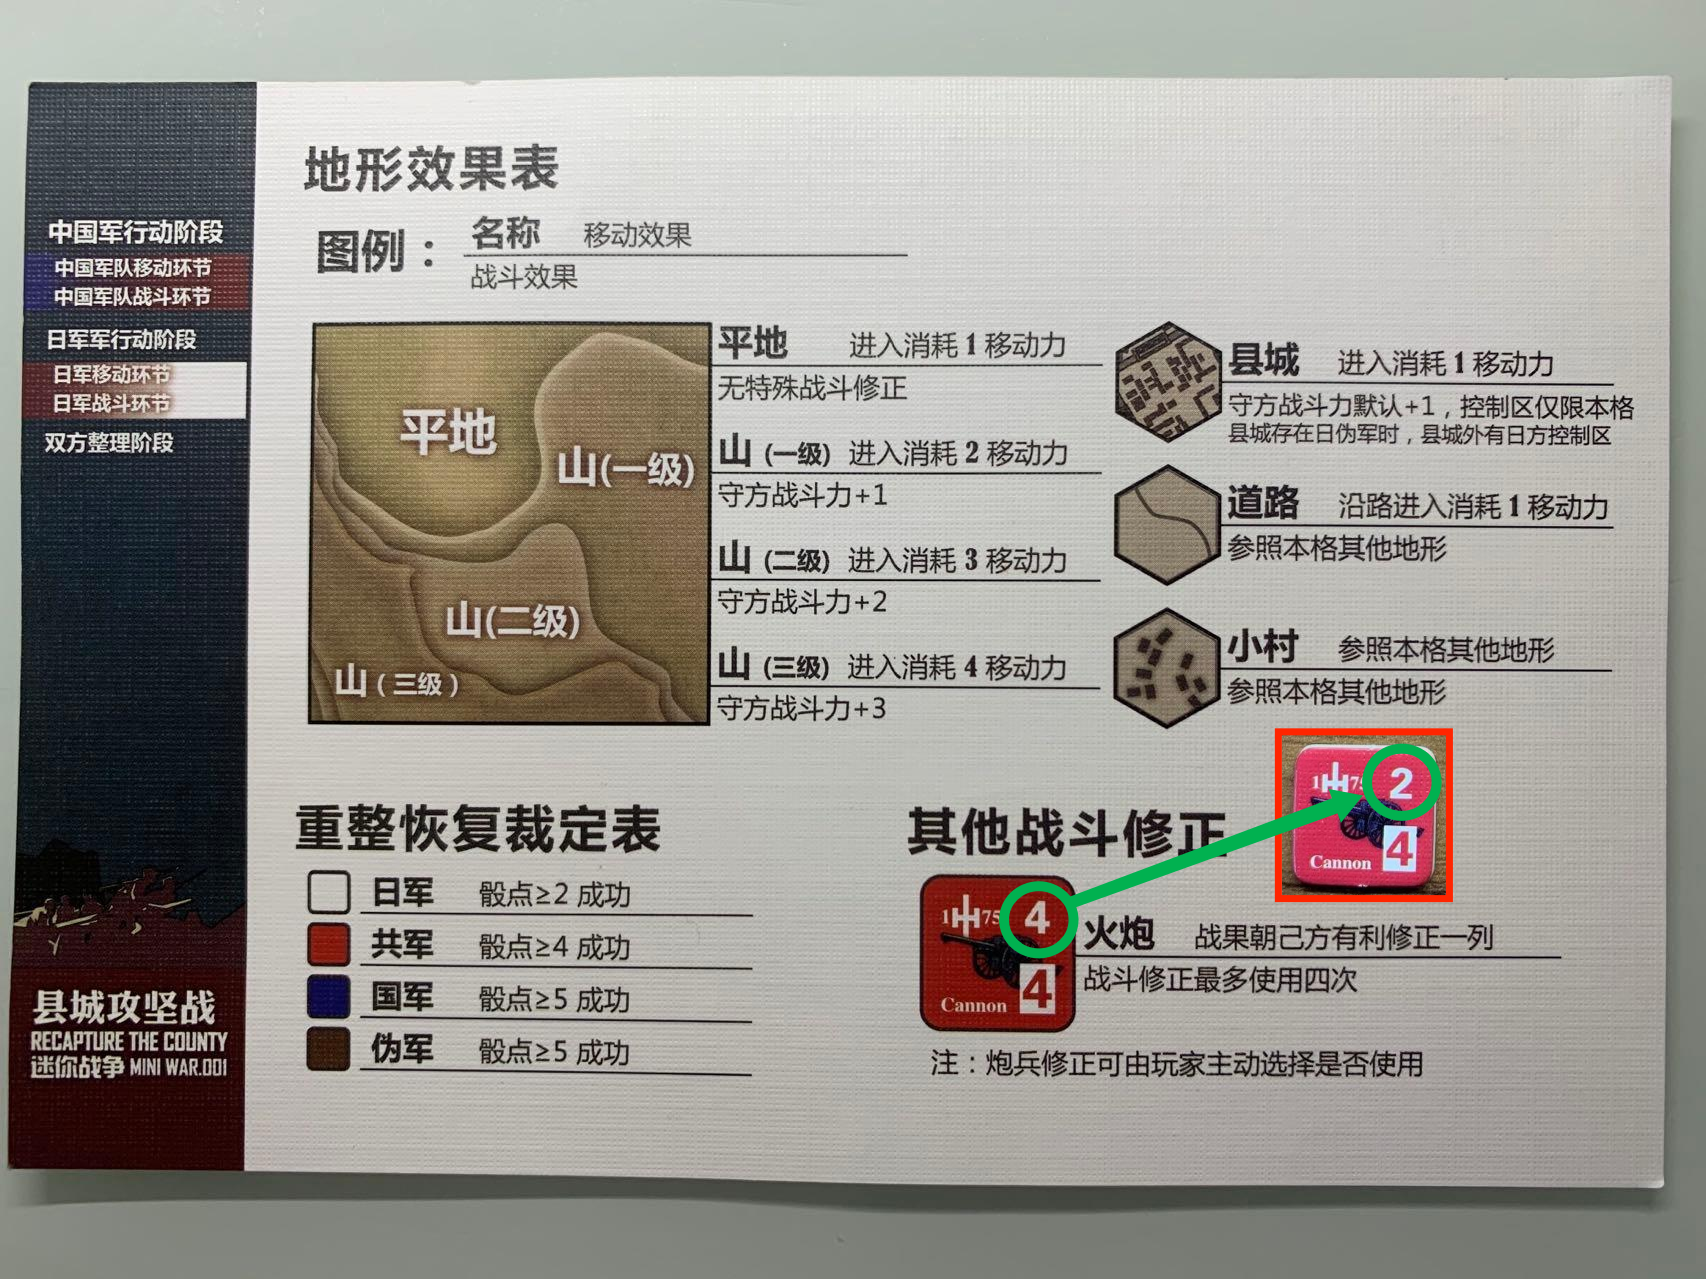 玩家輔助卡背面右下方，對於火炮部隊在戰鬥中的使用介紹得很詳盡，但是這裡火炮部隊圖例中其戰鬥力的數值與算子以及規則書不符，我在推演時會以算子實際上印製的戰鬥力為準